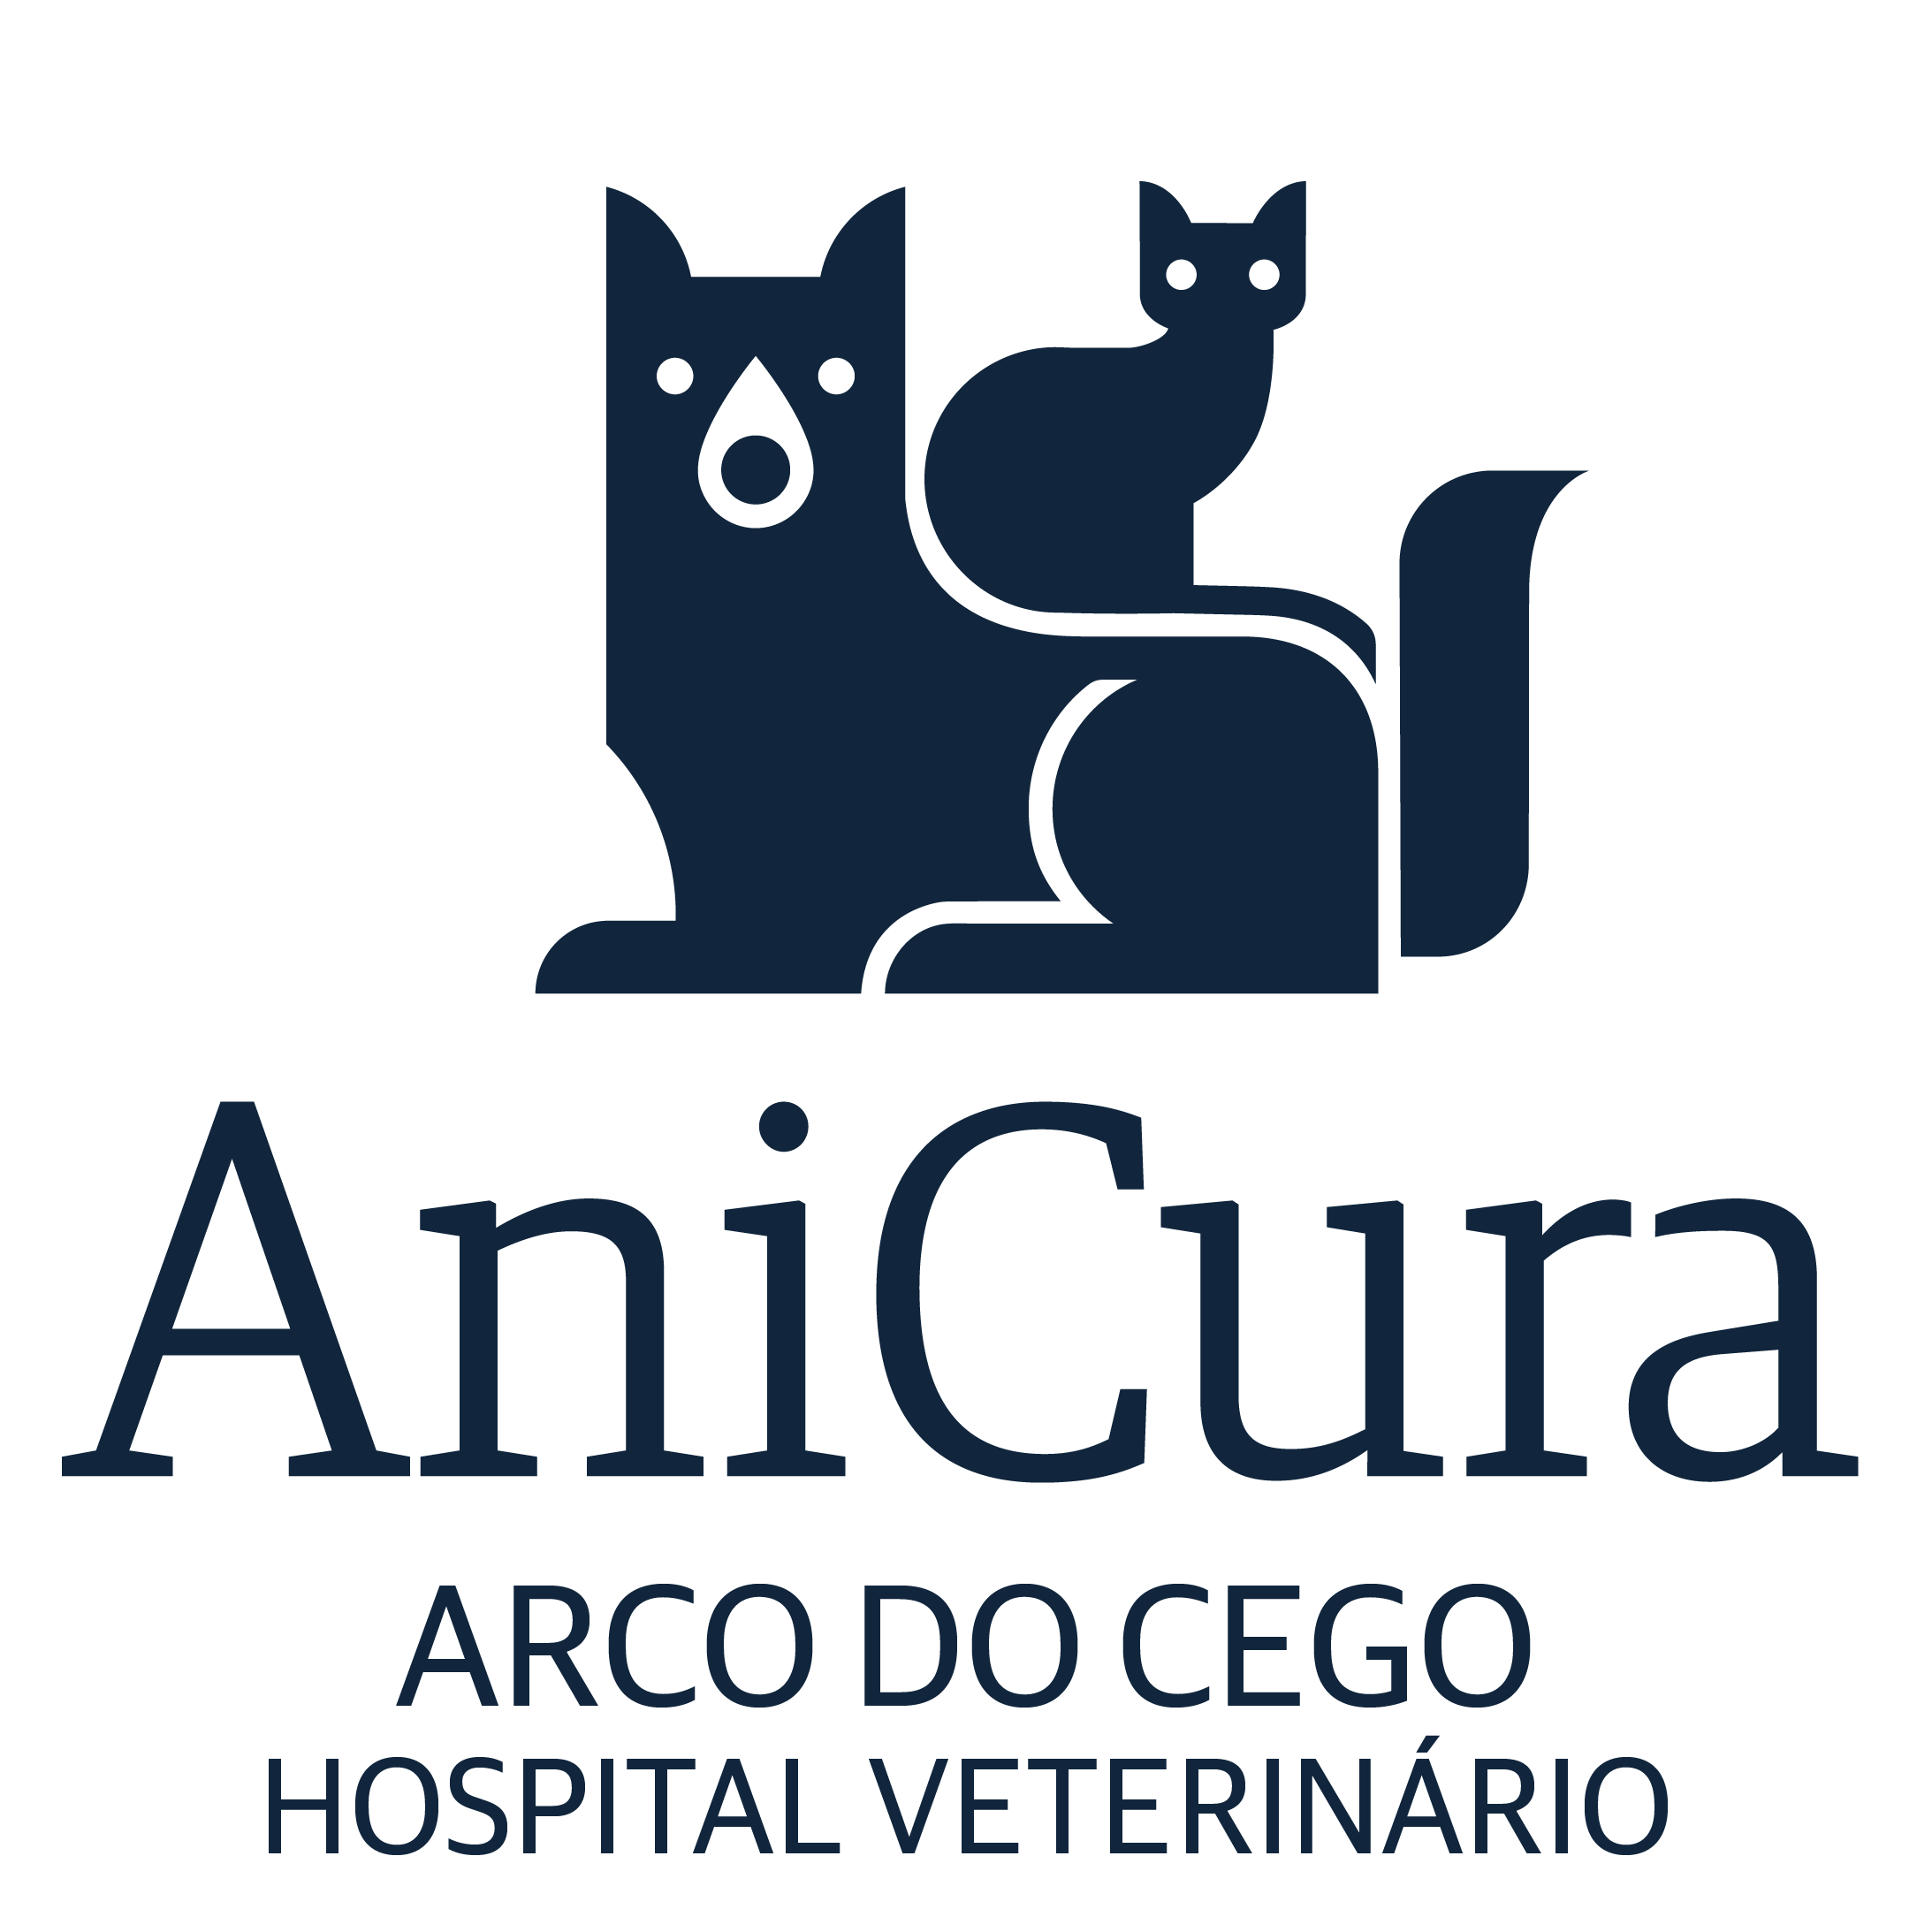 AniCura Arco do Cego Hospital Veterinário logo